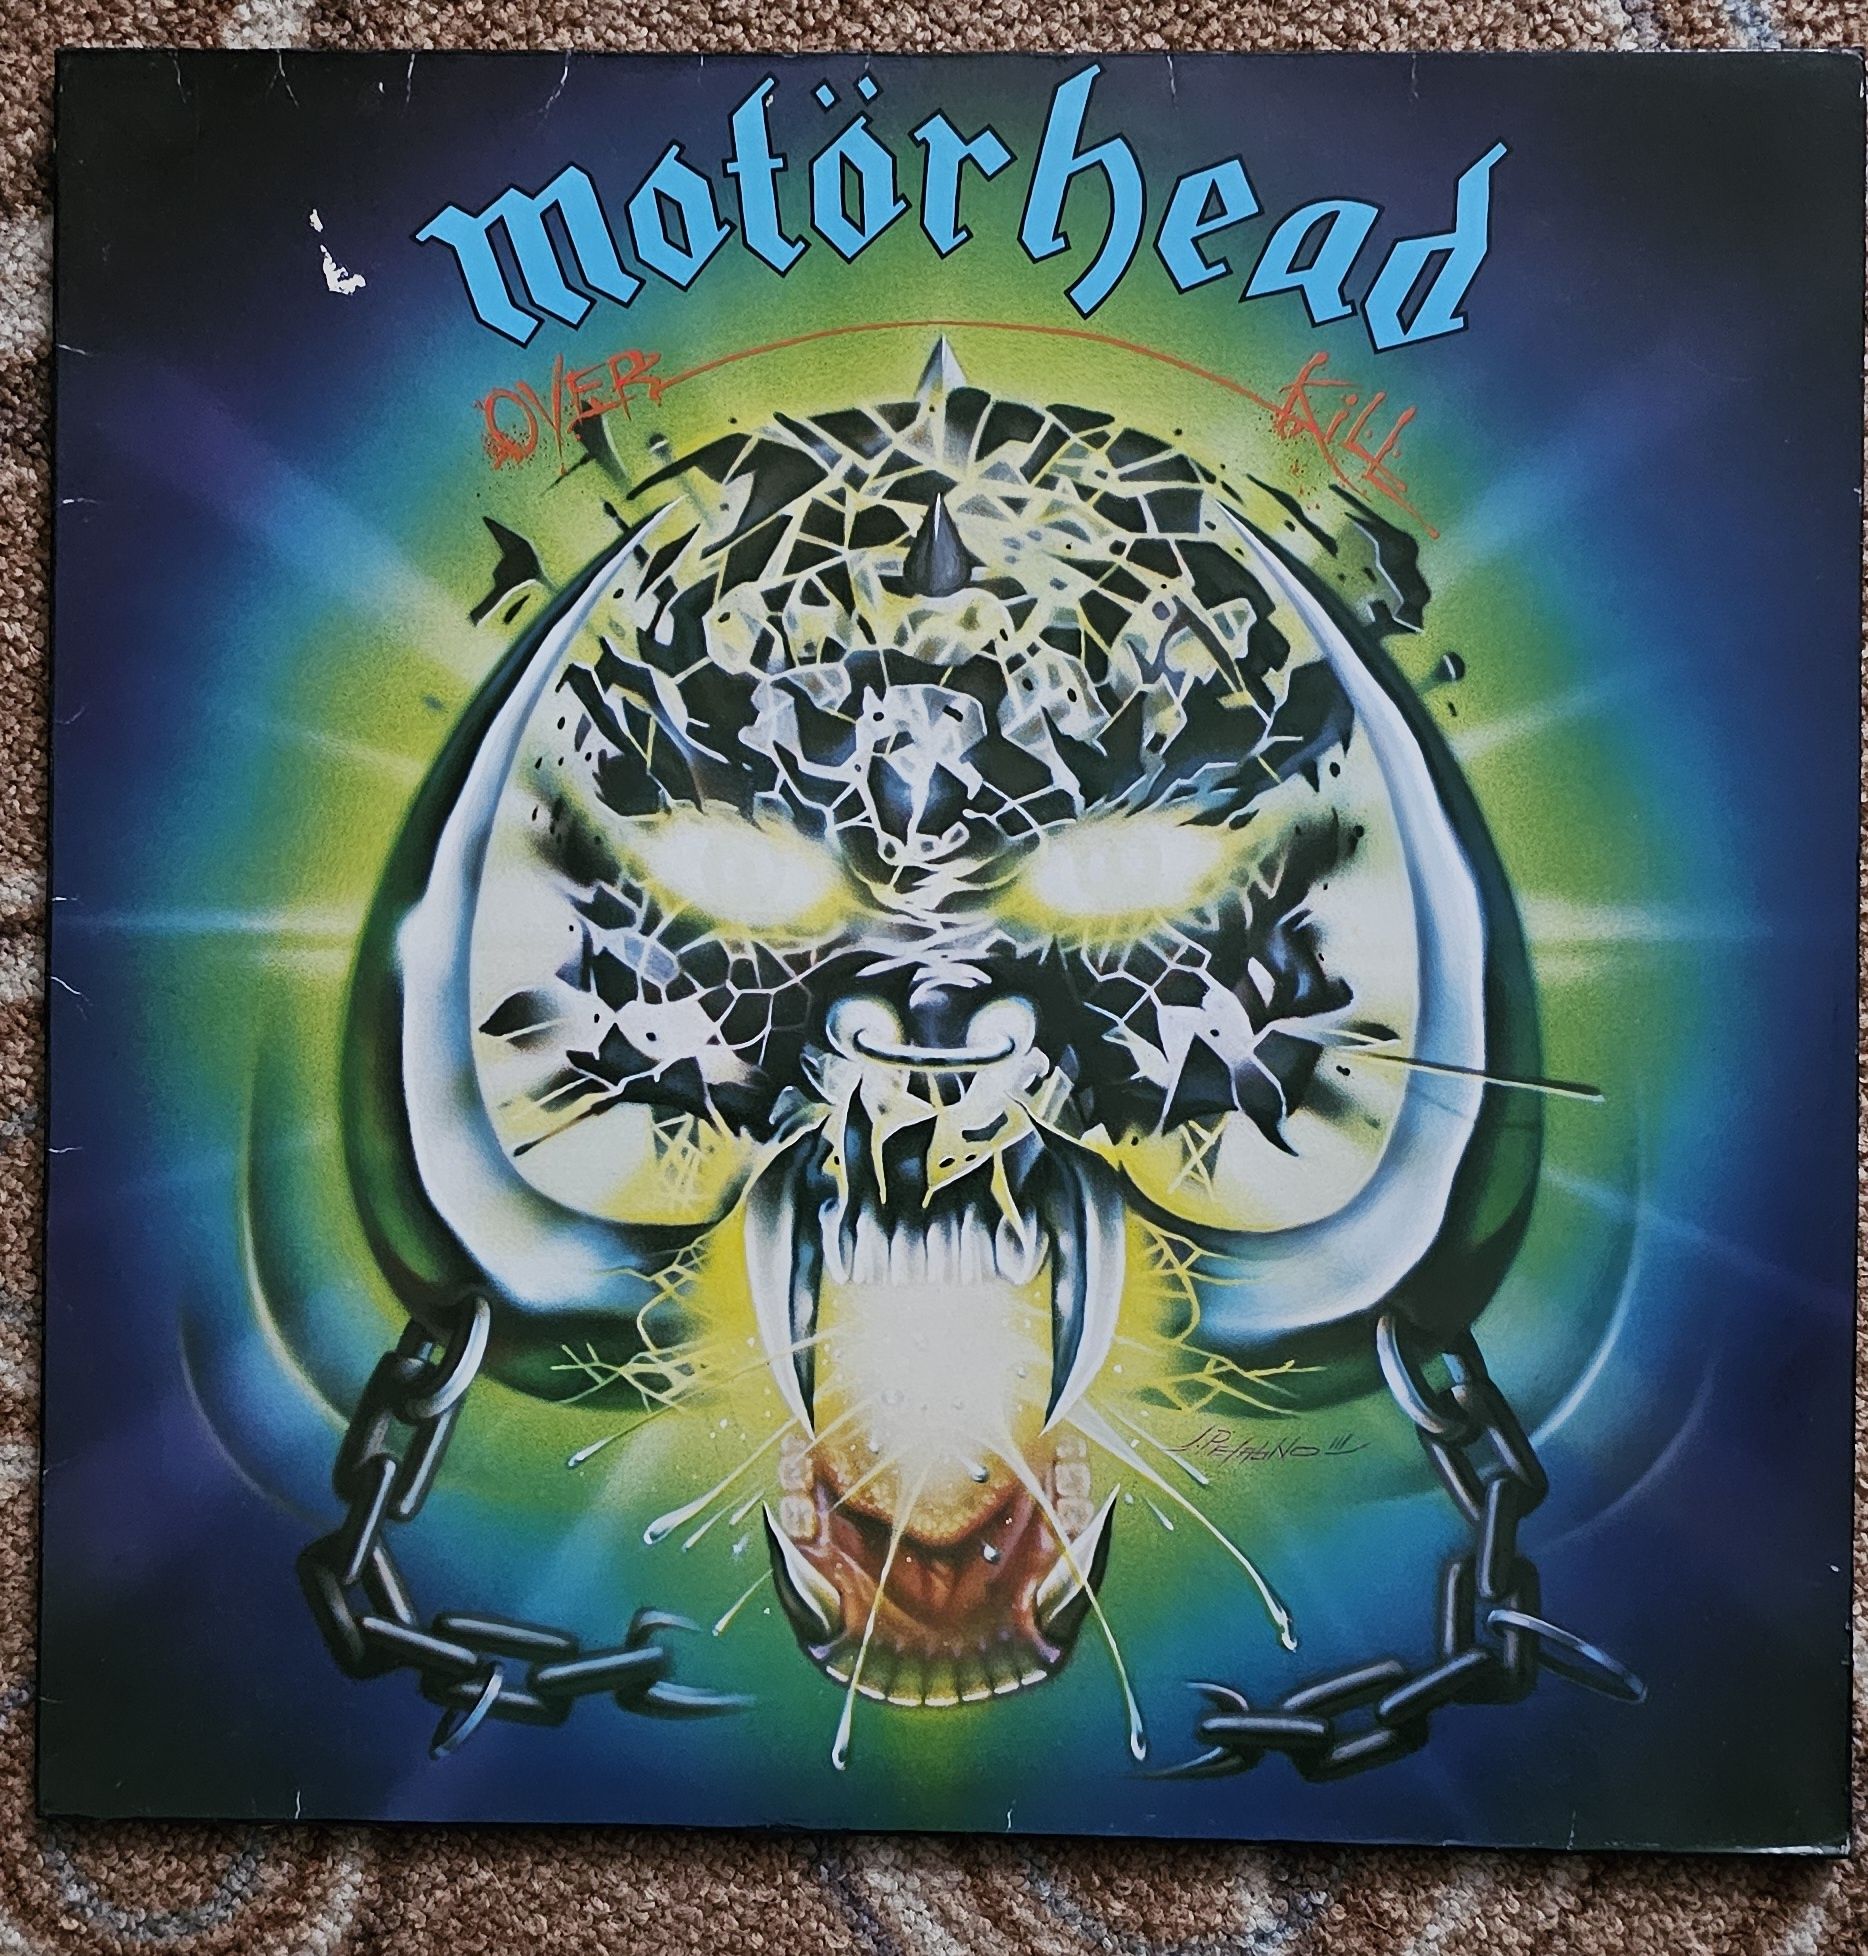 Motorhead over kill vinyl